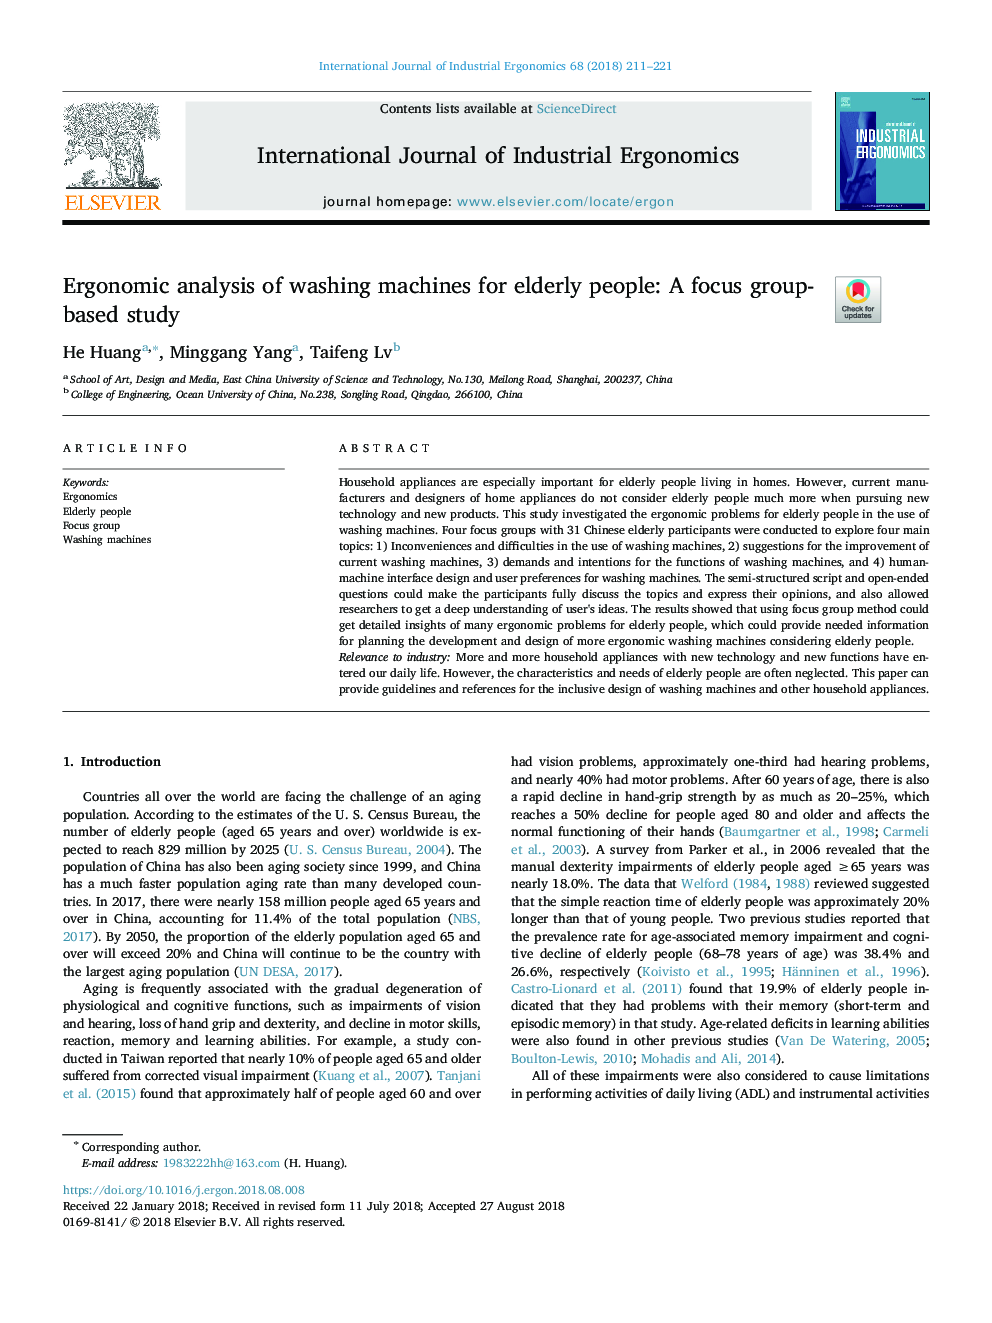 تجزیه و تحلیل ارگونومی ماشین لباسشویی سالمندان: یک مطالعه مبتنی بر تمرکز گروهی